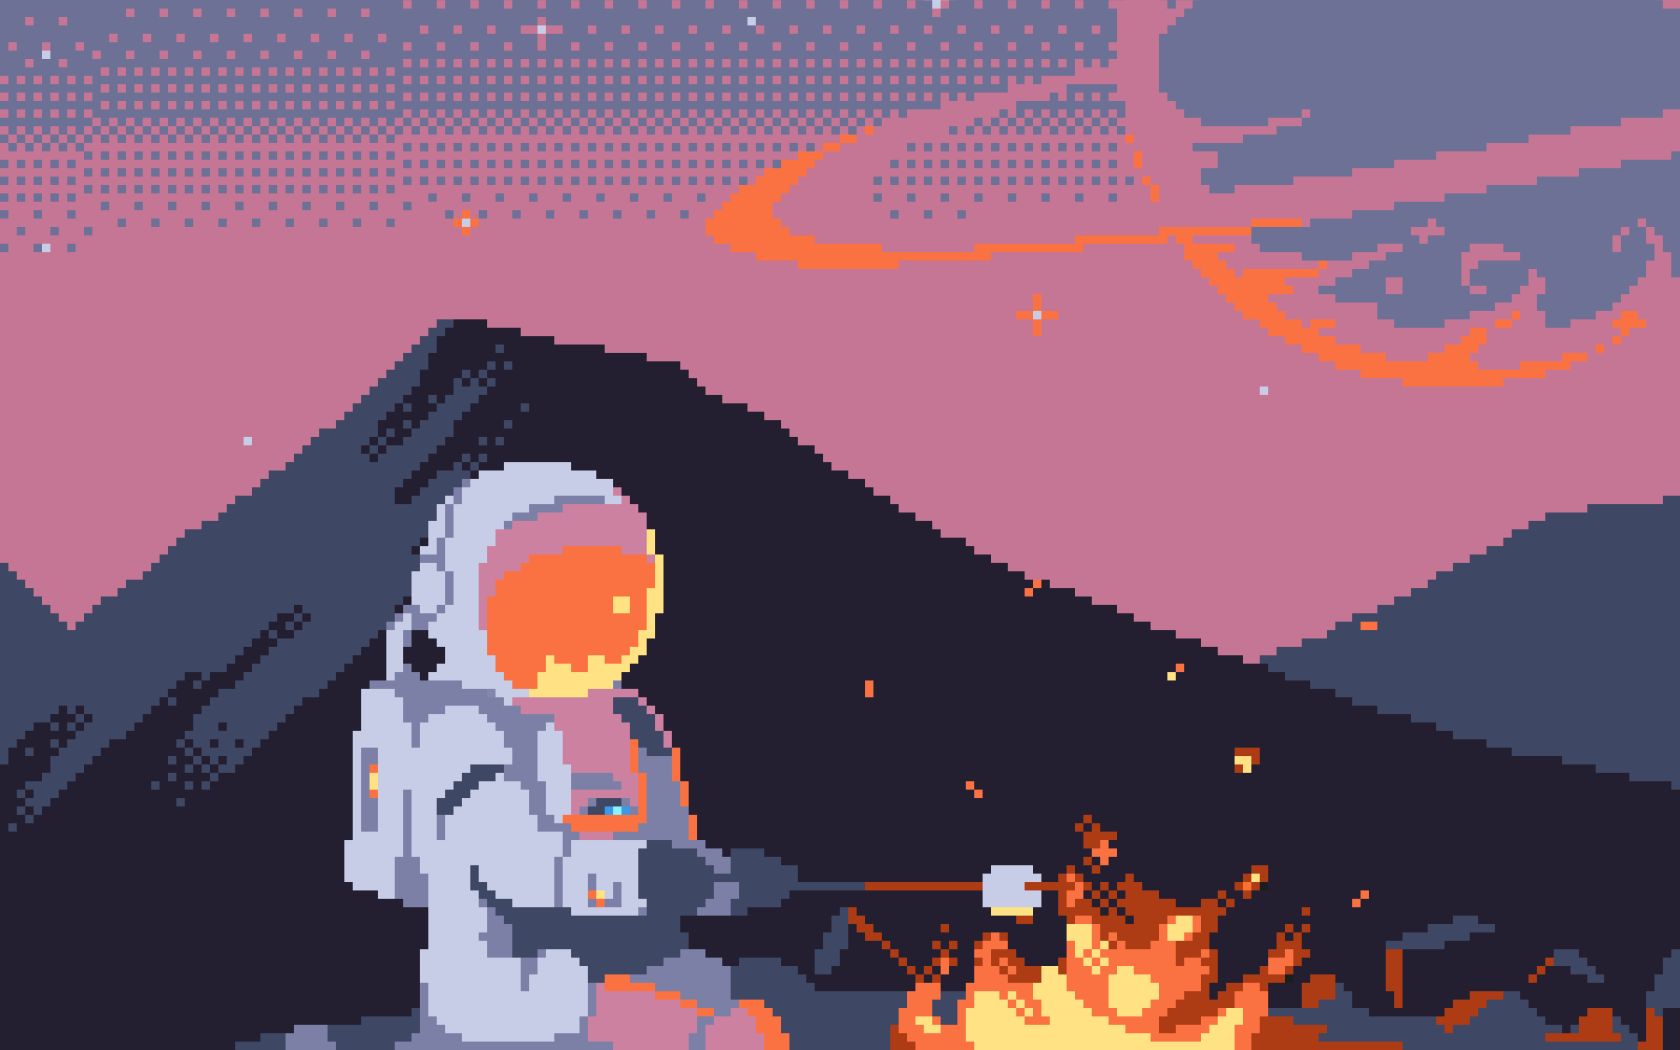 8 bit, artistic, pixel art, astronaut, fire, spacesuit